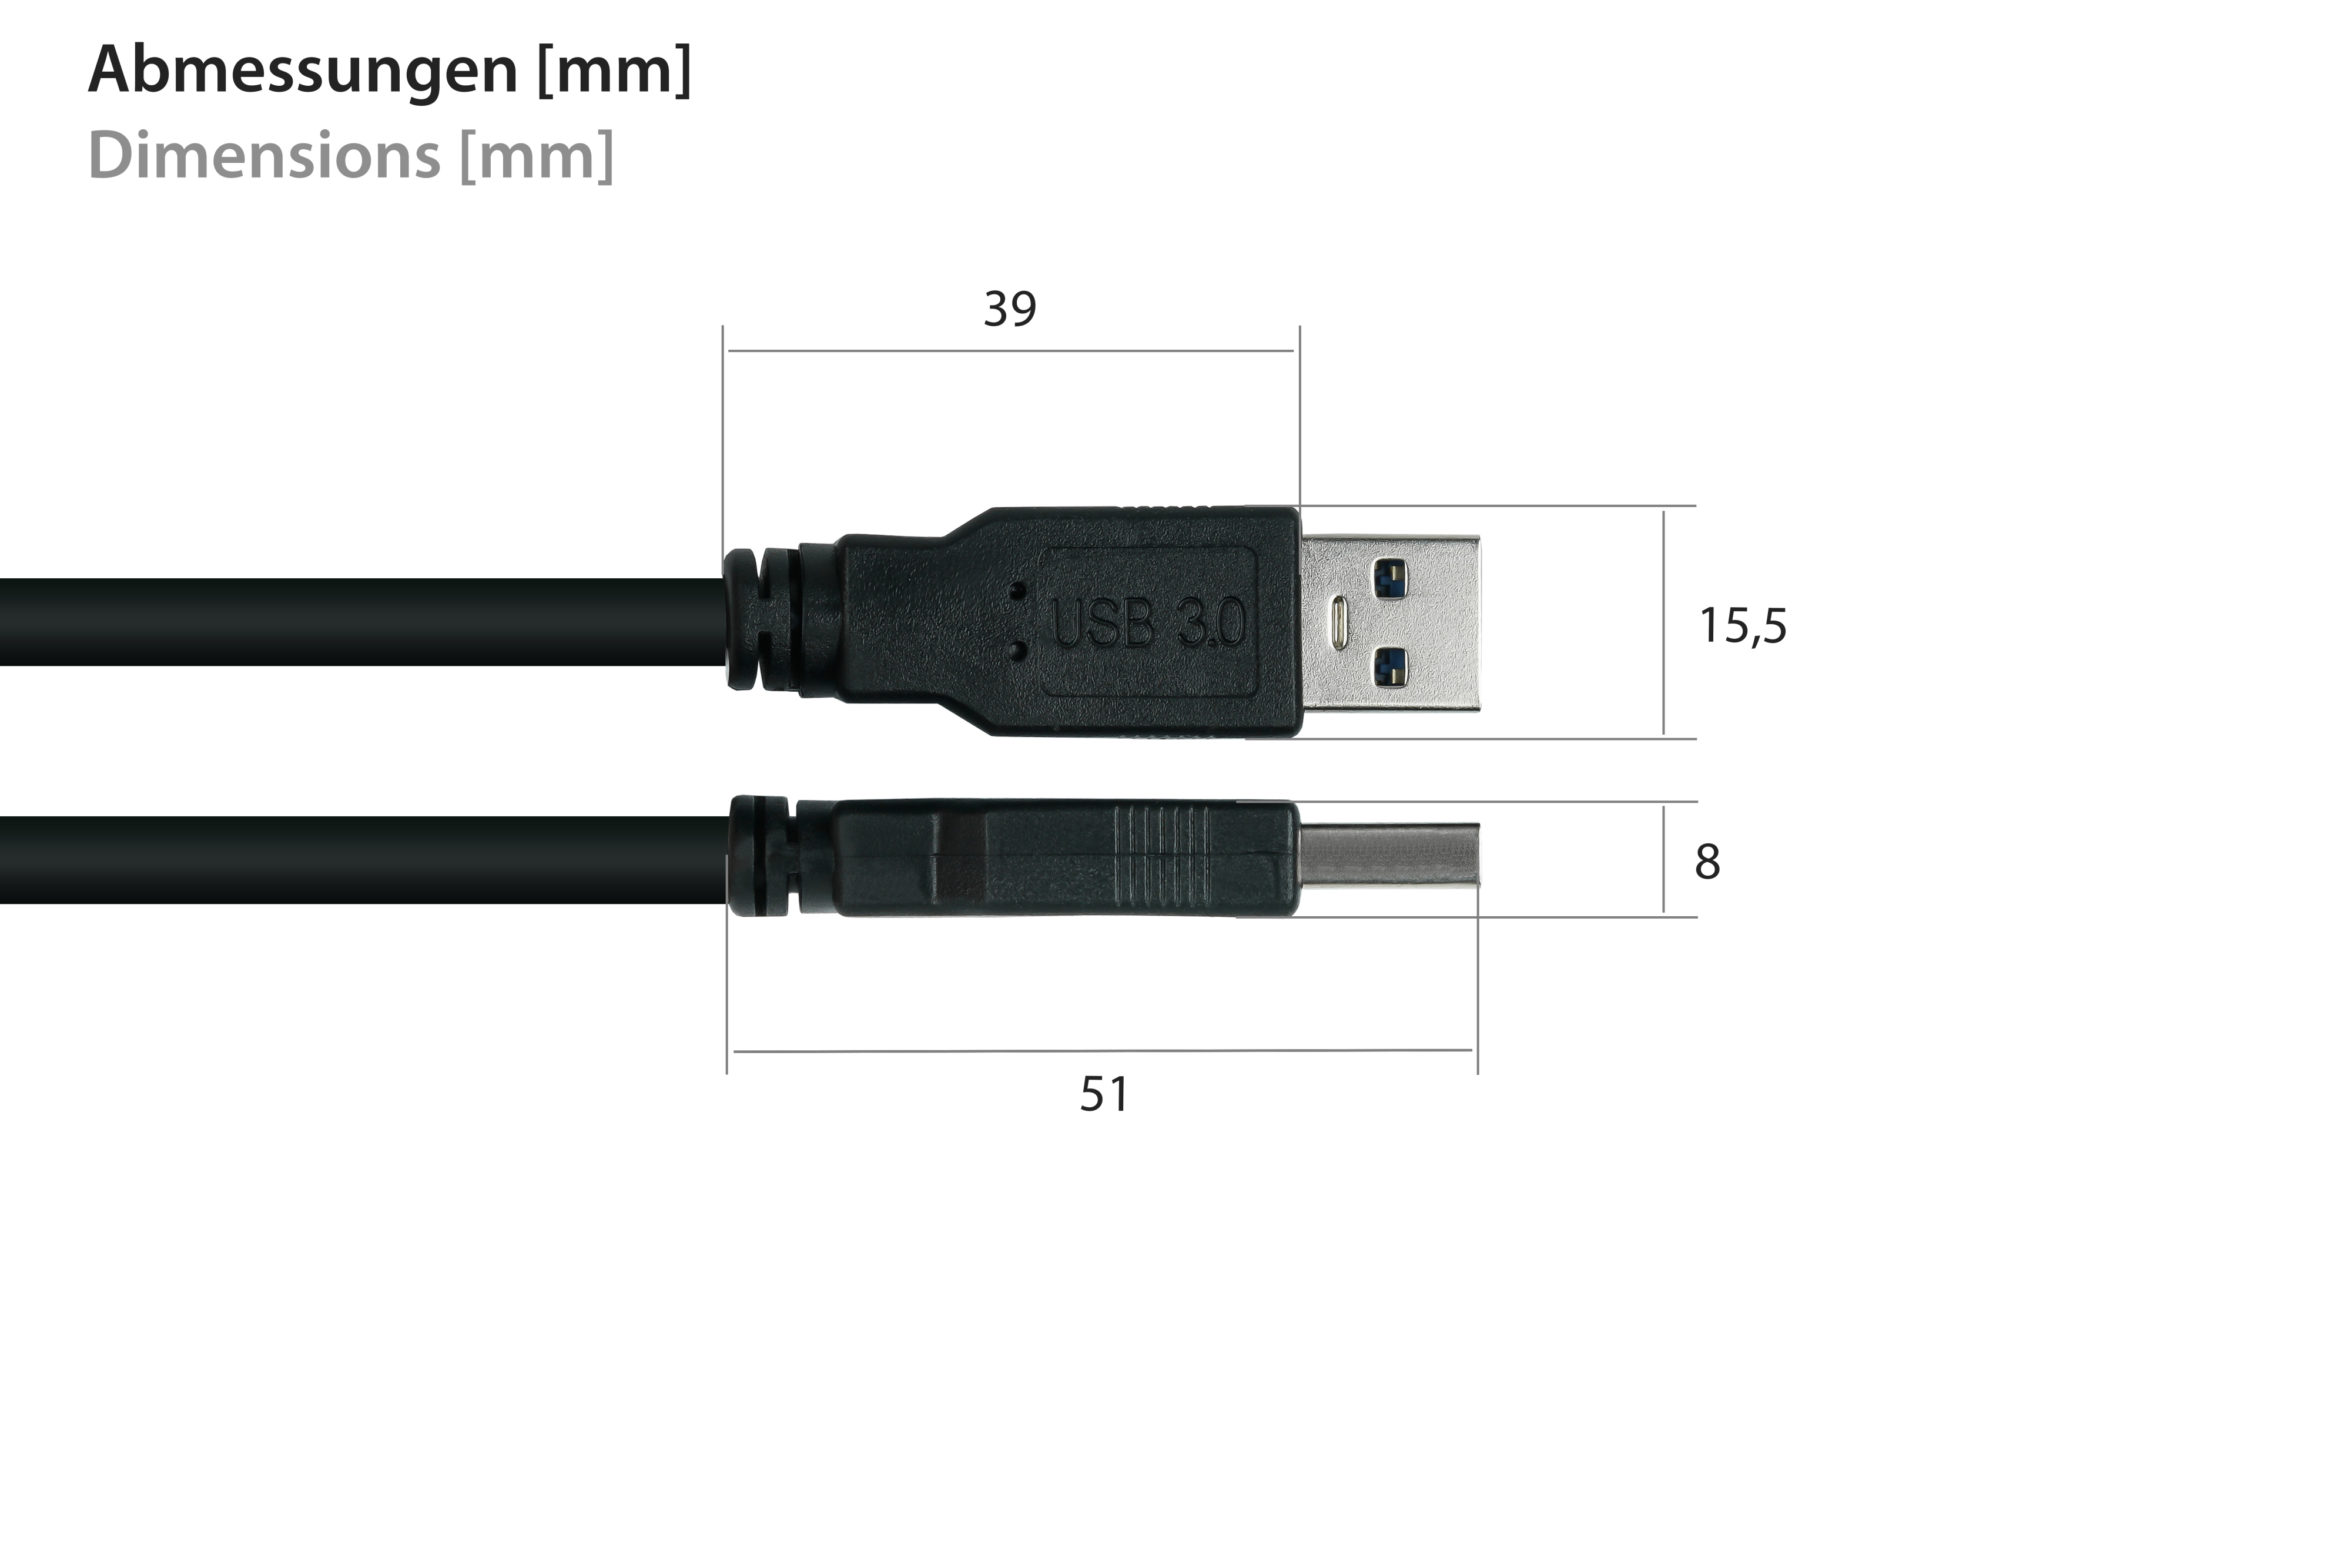 A,Premium, AWG28 UL, AWG24, 3.0 an USB Kabel KABELMEISTER KUPFER, schwarz Stecker Stecker / A